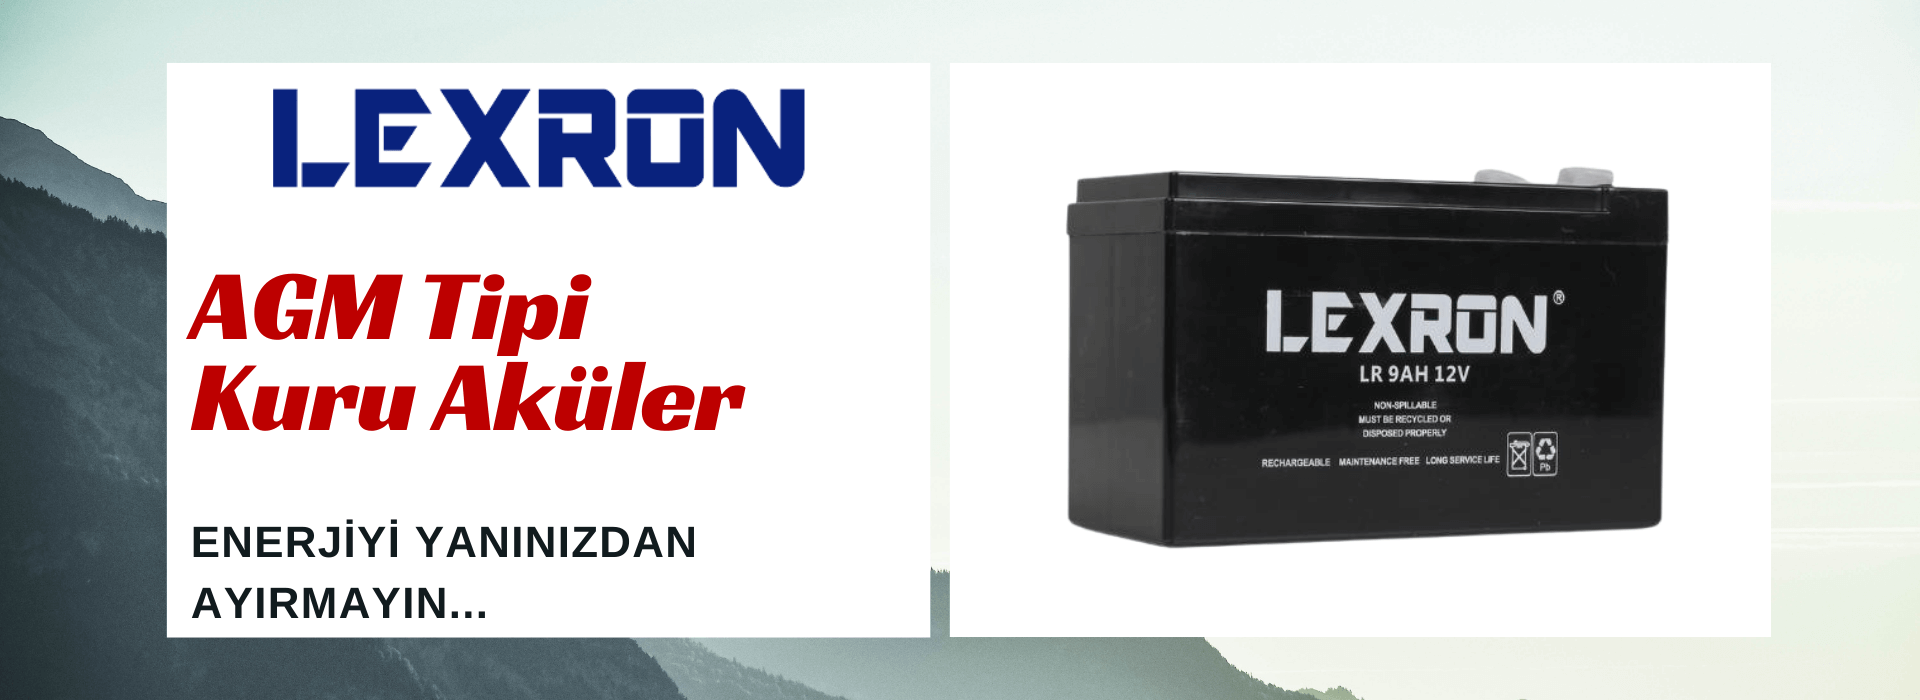 Lexron AGM Tipi Kuru Aküler